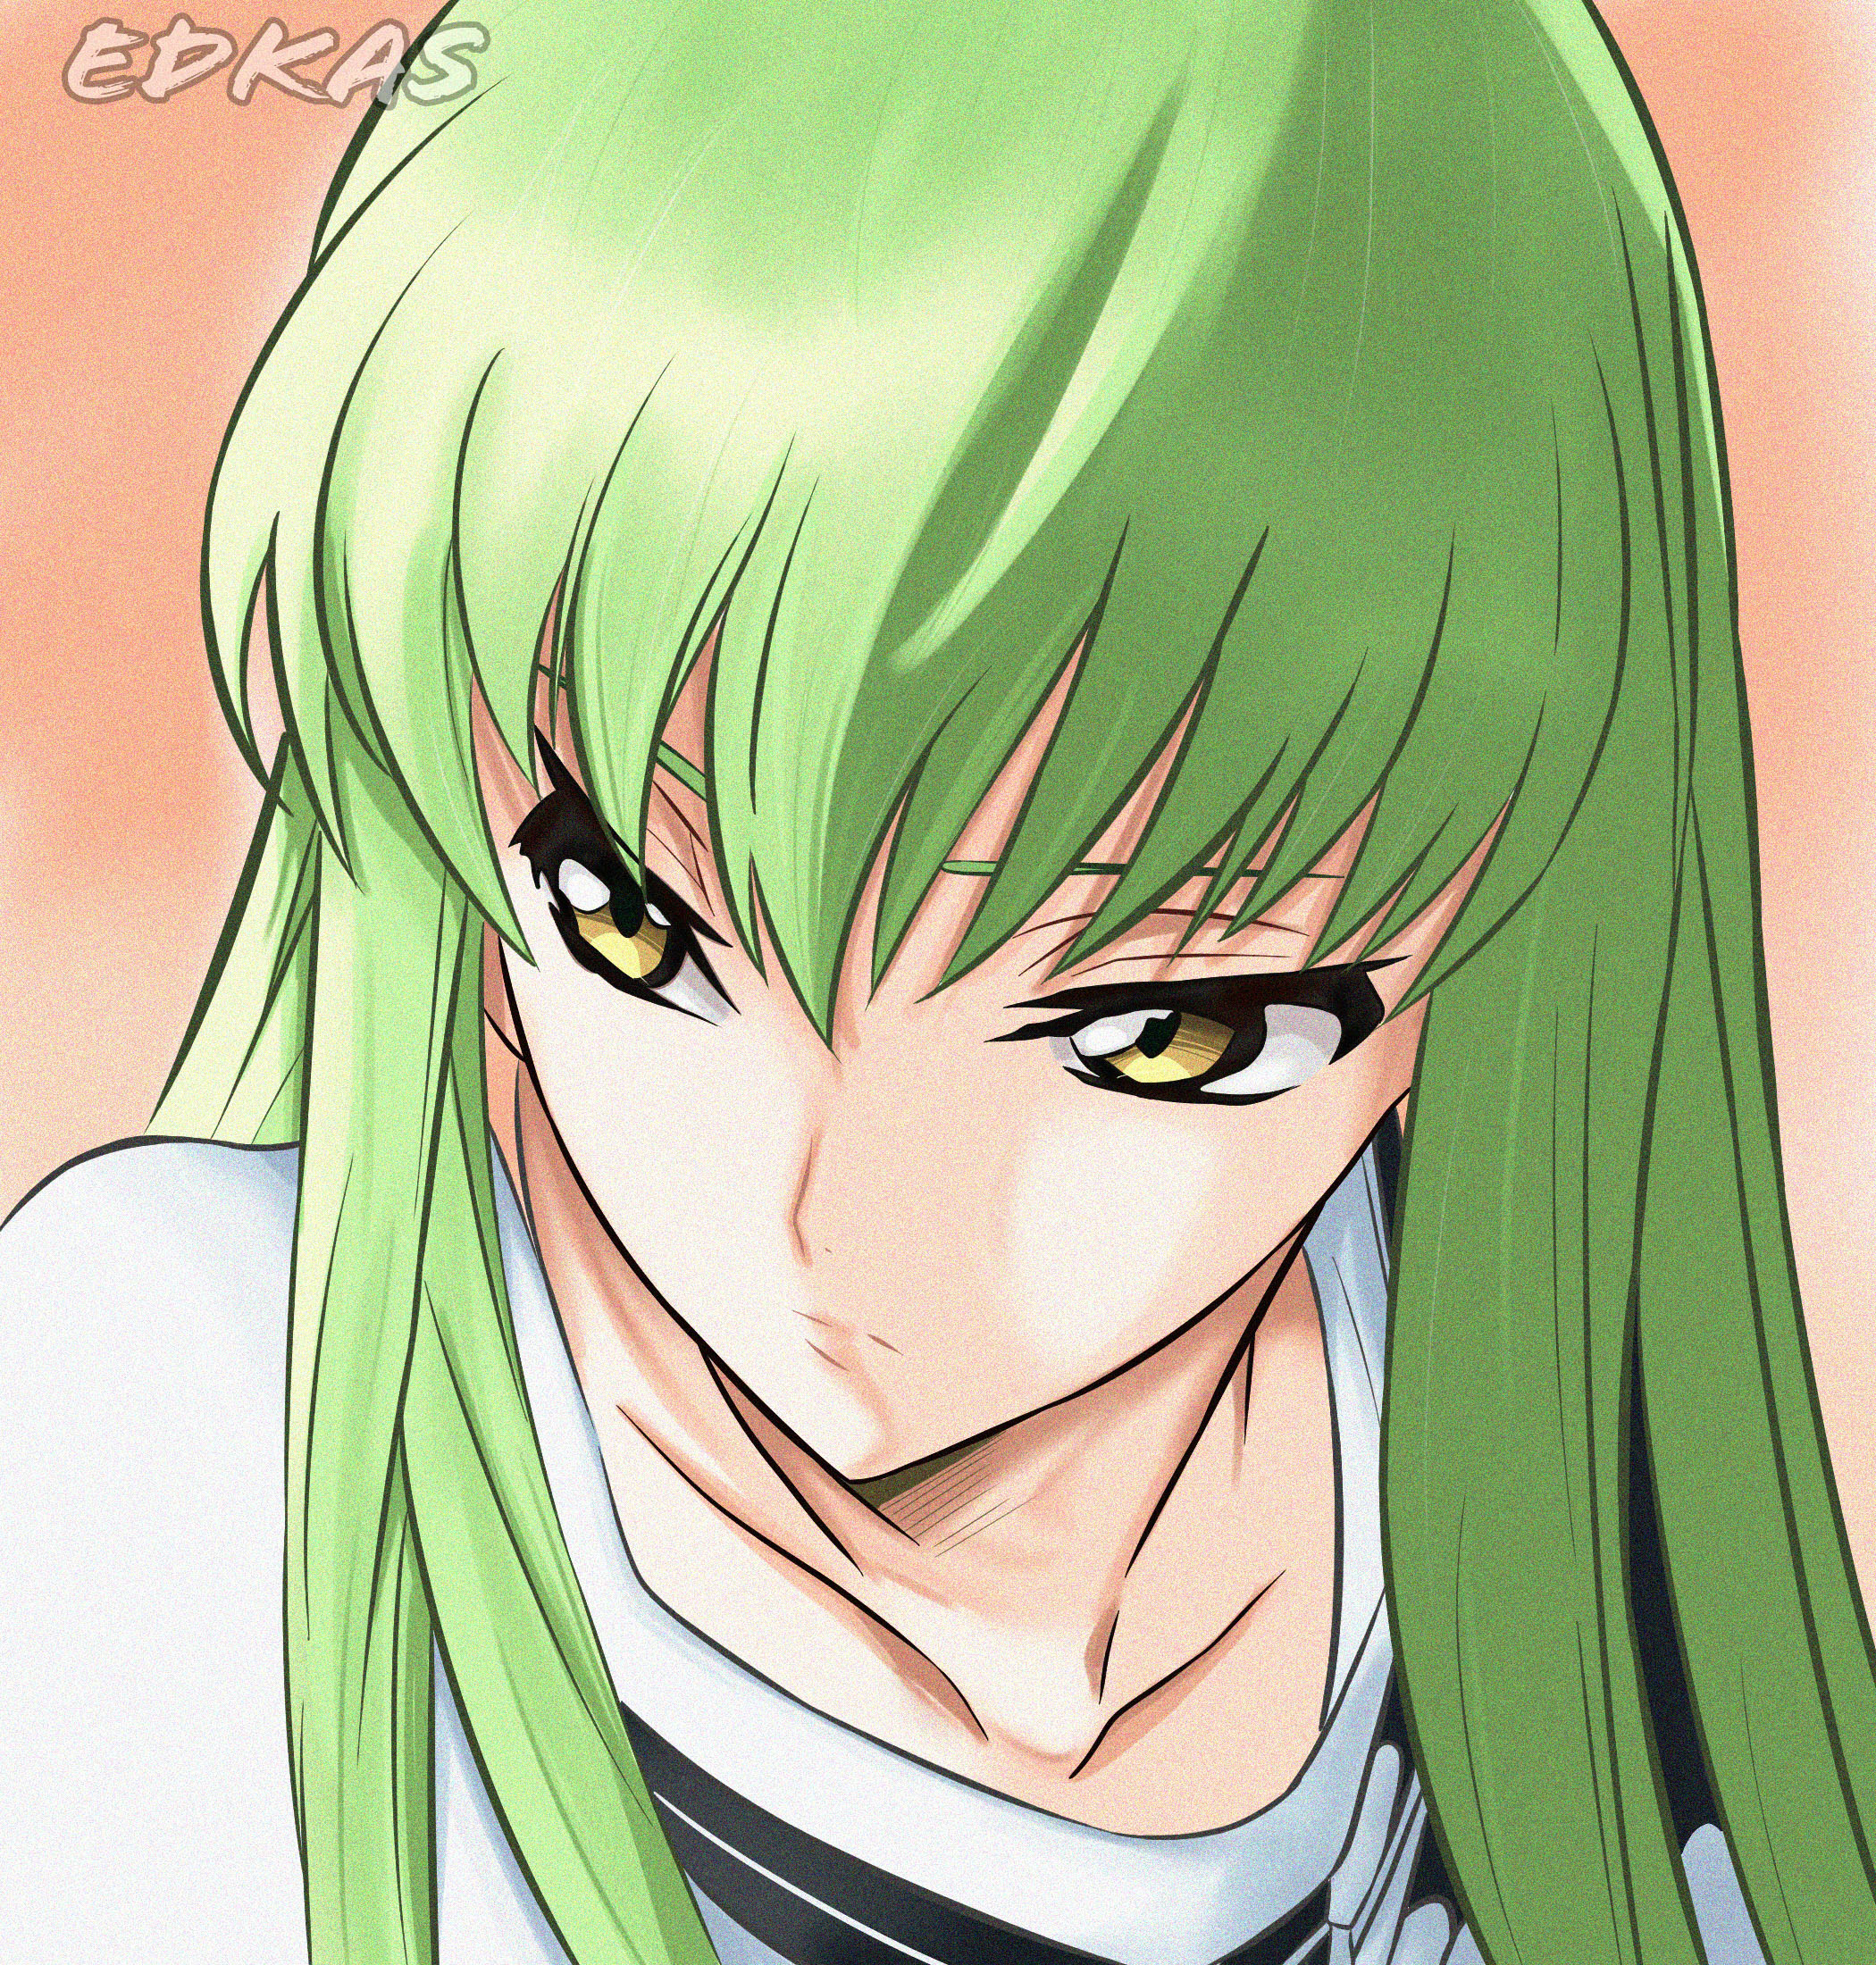 Anime Anime Girls Code Geass C C Code Geass Long Hair Green Hair Solo Artwork Digital Art Fan Art 2100x2200